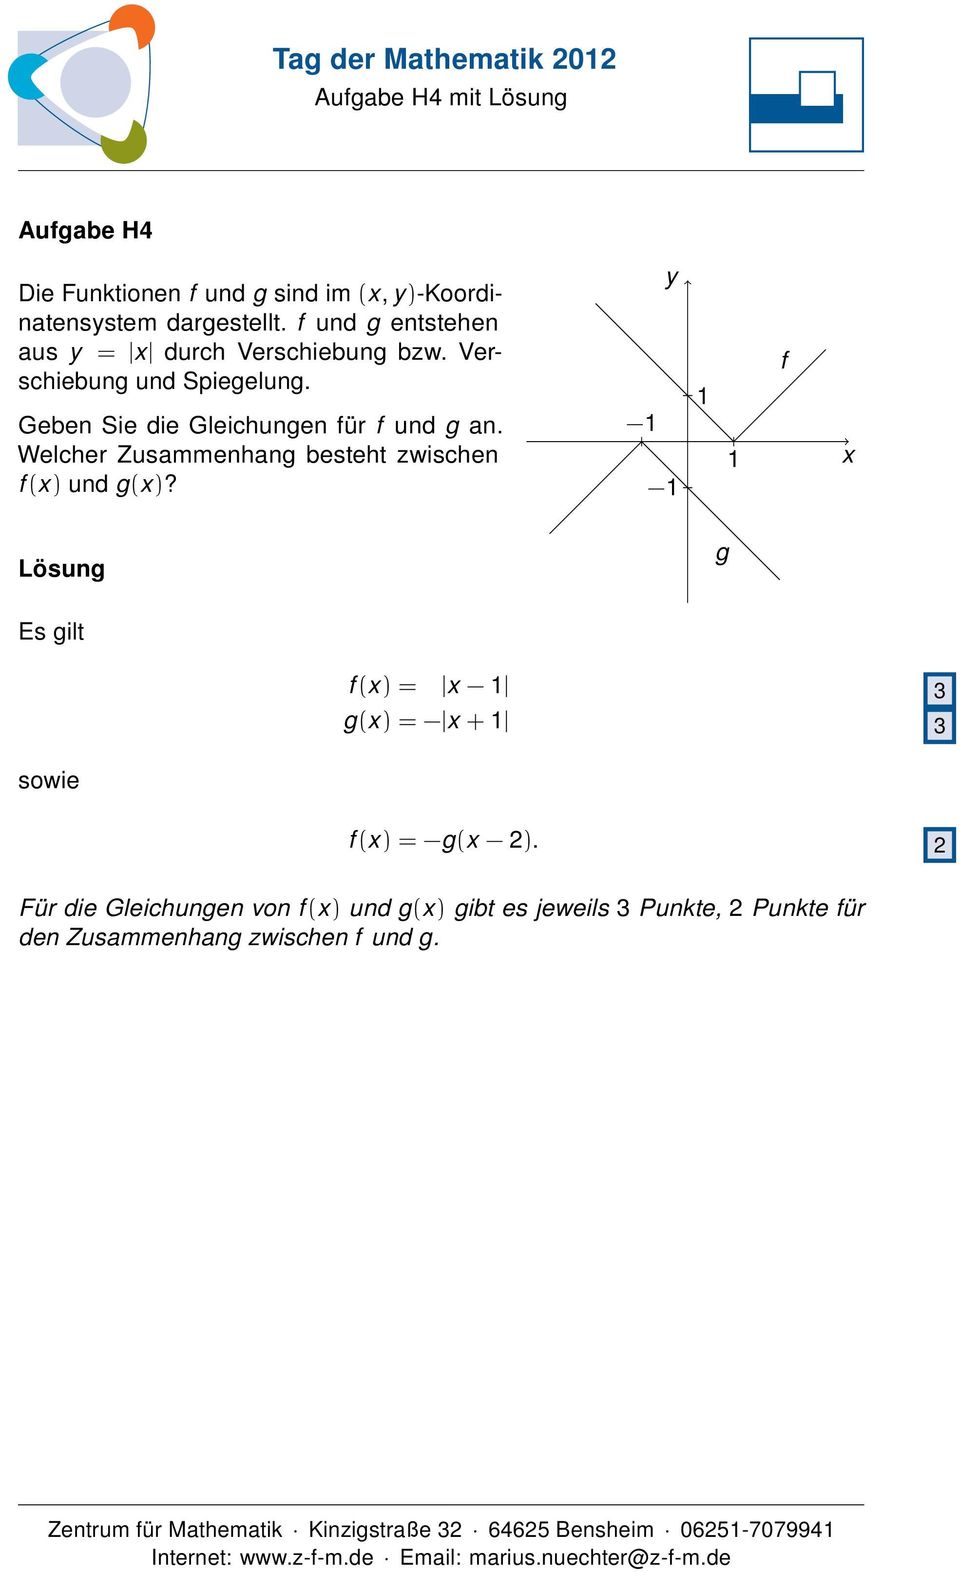 Geben Sie die Gleichungen für f und g an. Welcher Zusammenhang besteht zwischen f (x) und g(x)?